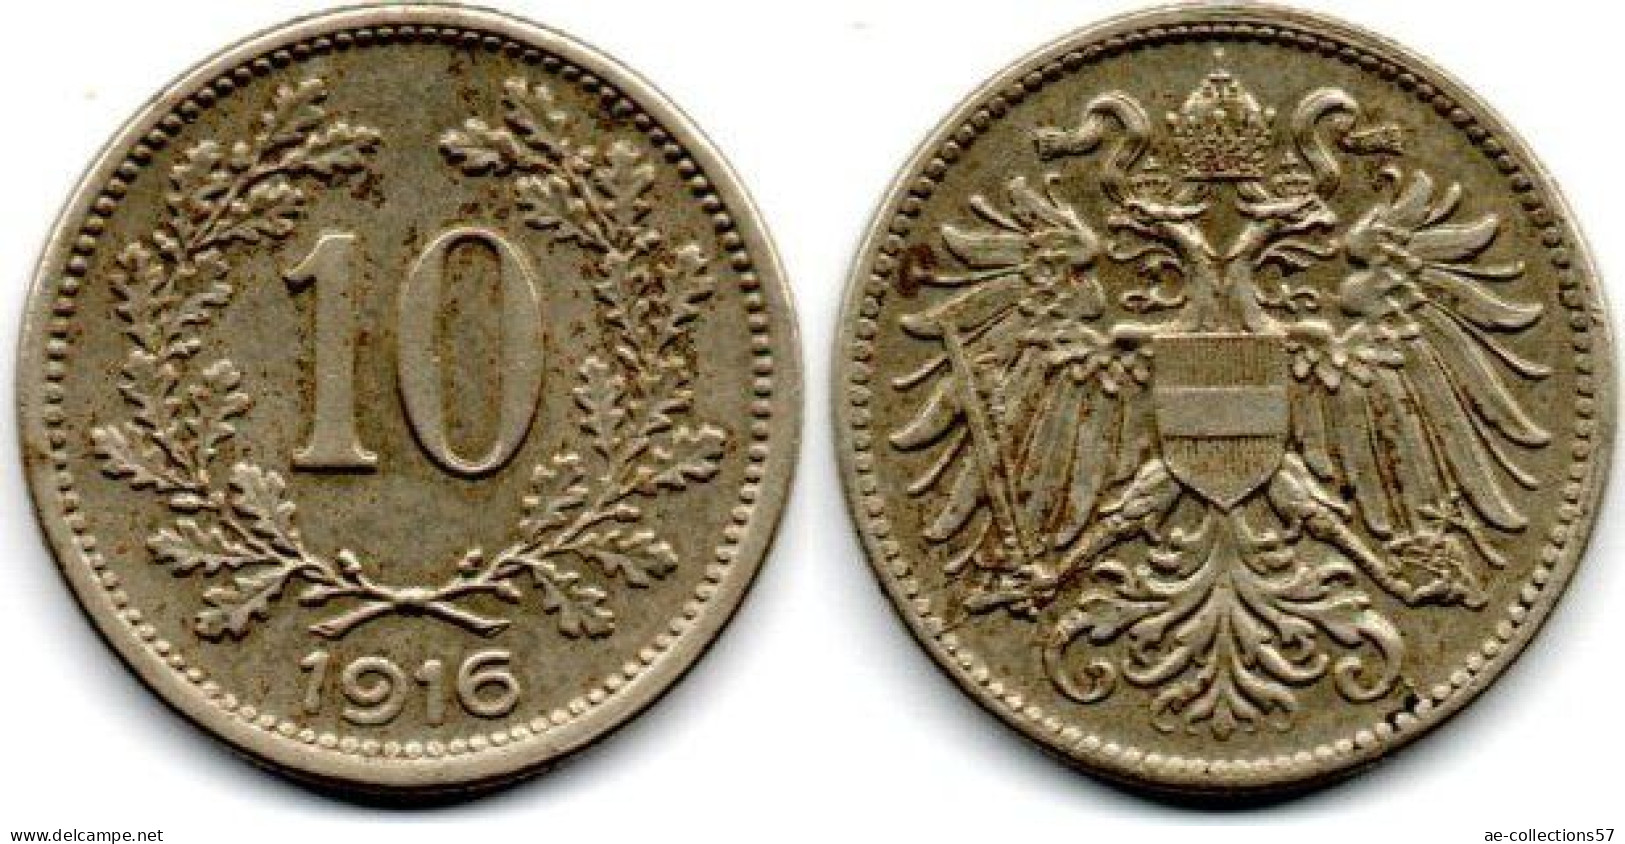 MA 30878  //   Autriche      //  10 Heller 1916  /   TTB - Autriche